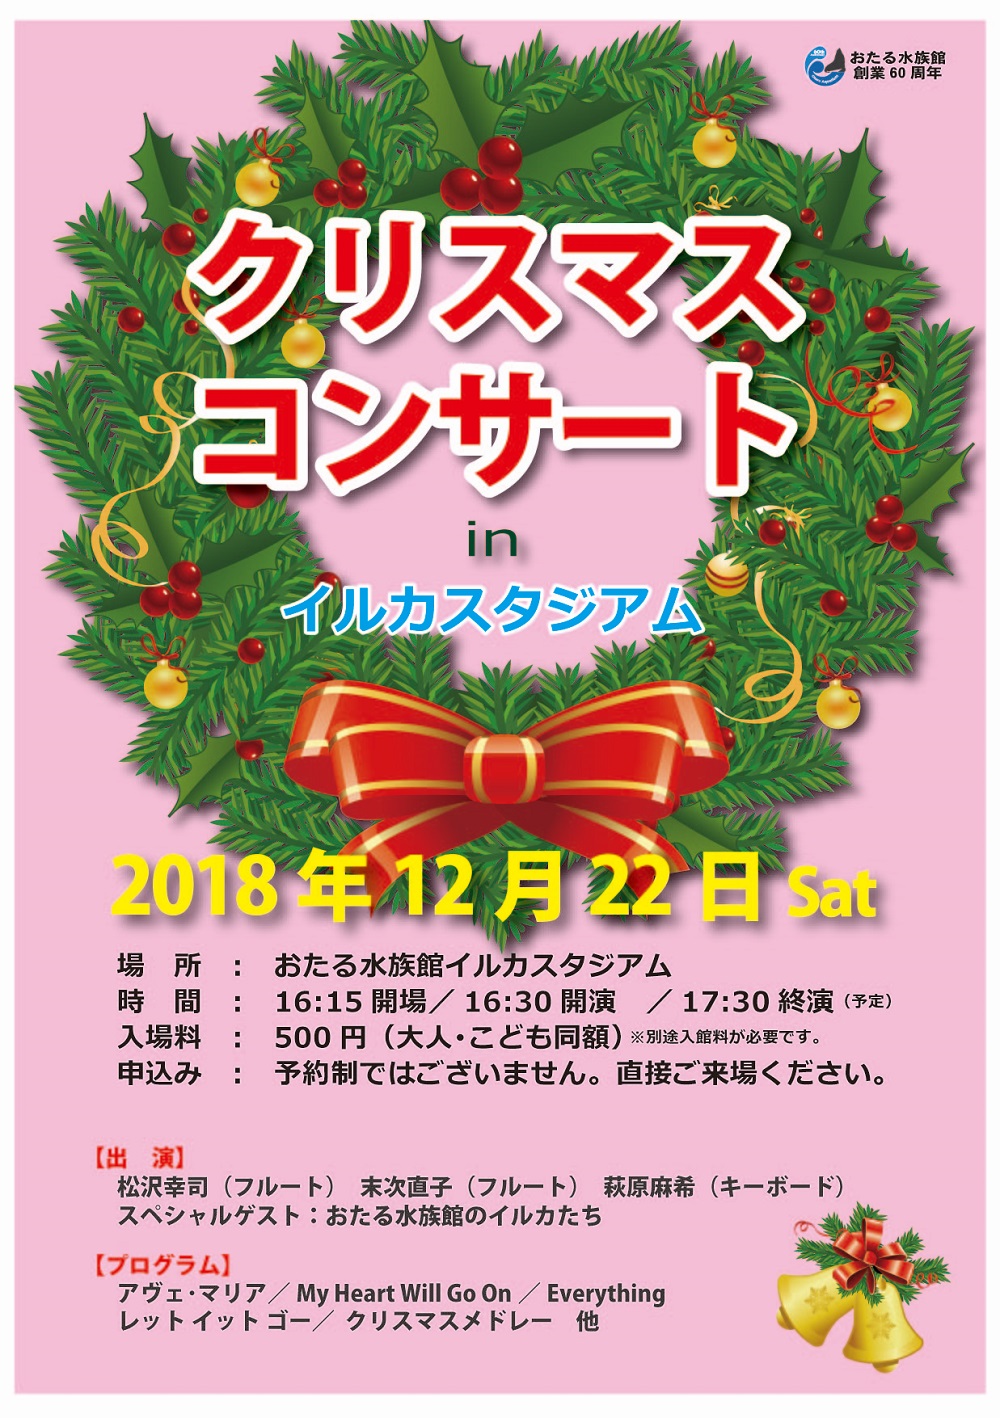 イルカとクリスマスコンサート 12 22 小樽市 おたる水族館 海と日本project In ガッチャンコ北海道